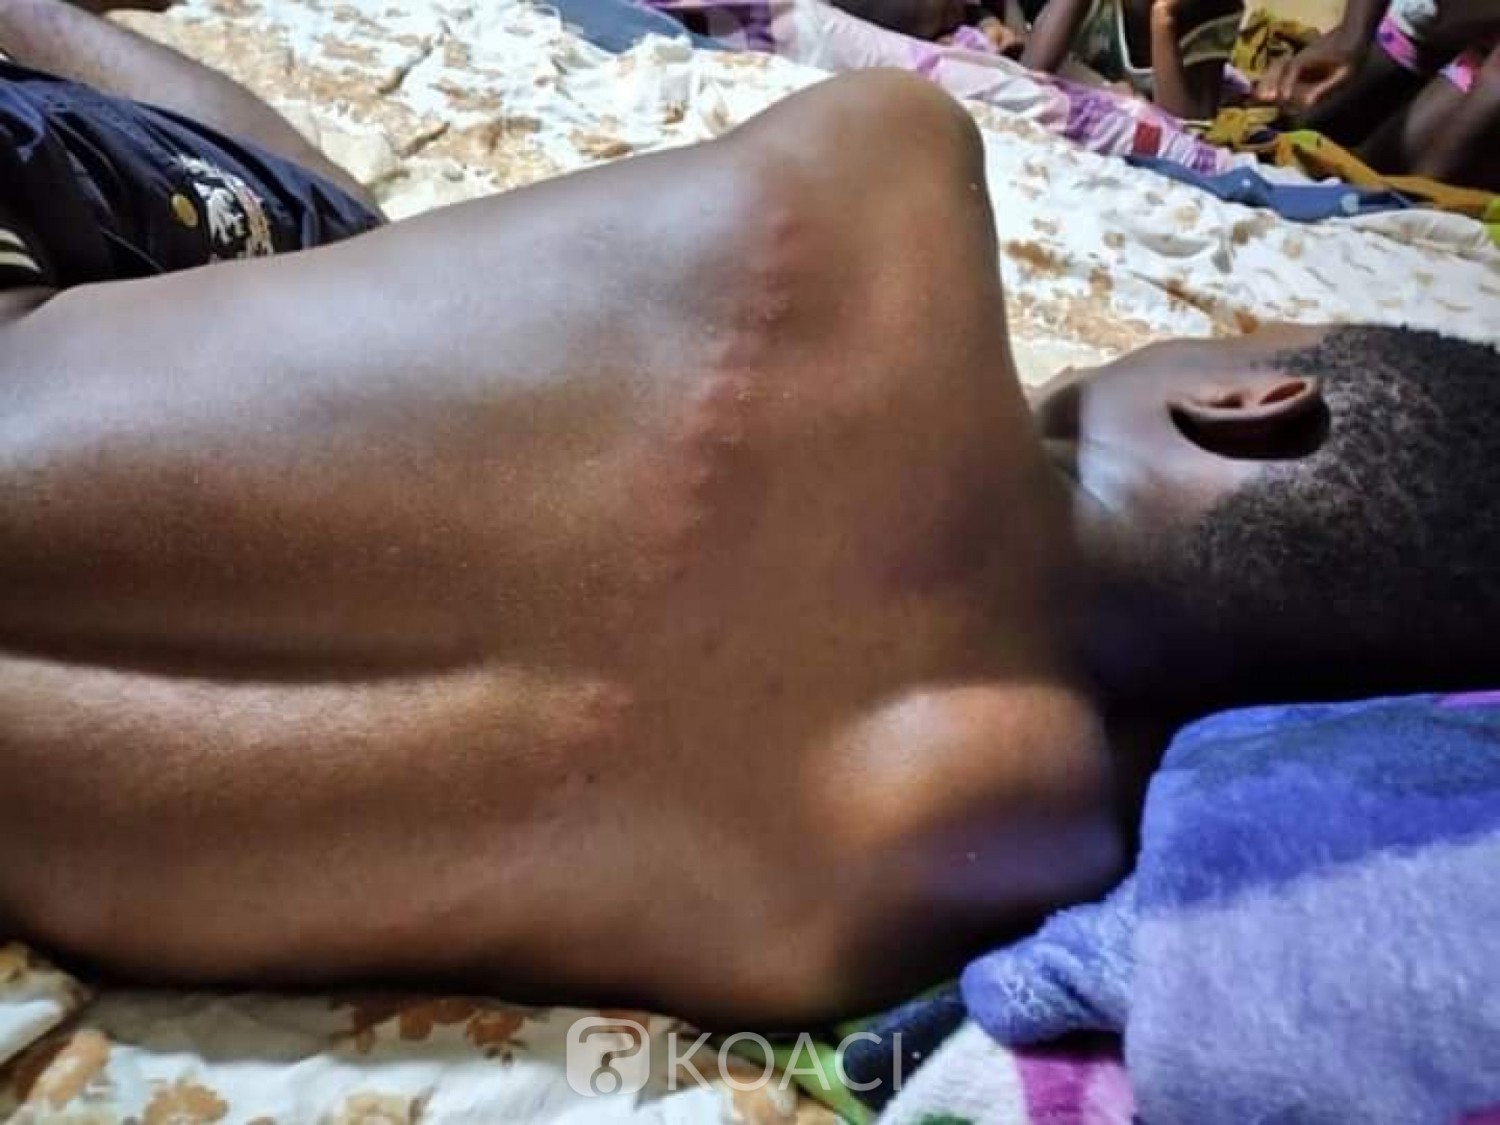 Côte d'Ivoire : Yamoussoukro, un jeune violemment frappé et laissé dans un état comateux par des bandits qui voulaient sa moto